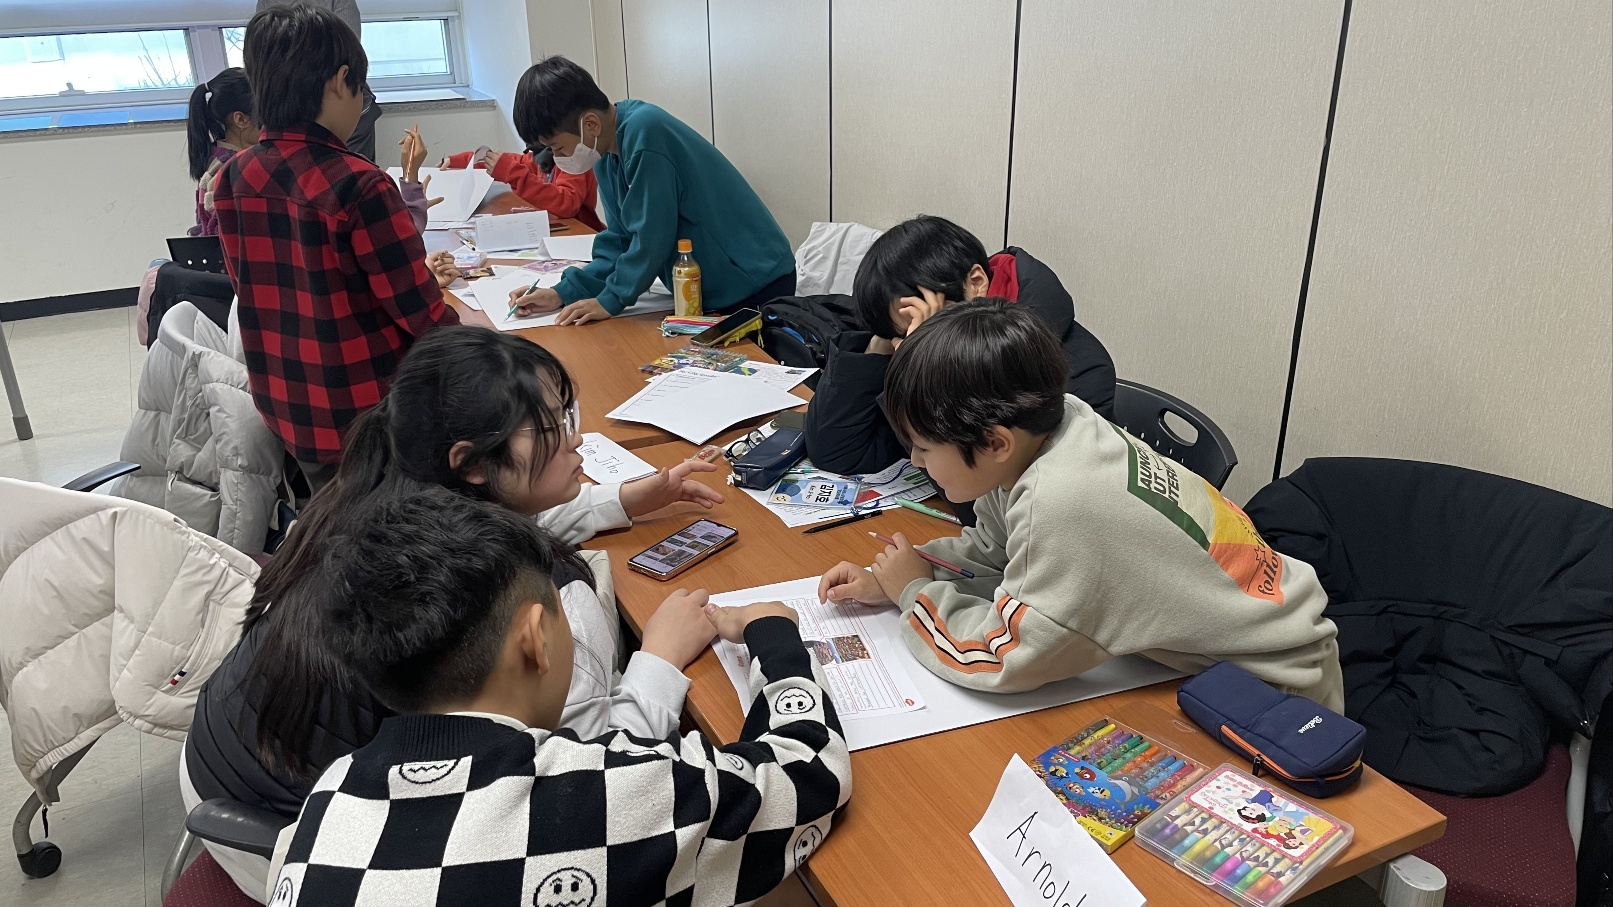 시립서울청소년센터, 한국외국어대학교와 함께하는 ‘서울청소년동행캠프’ 진행